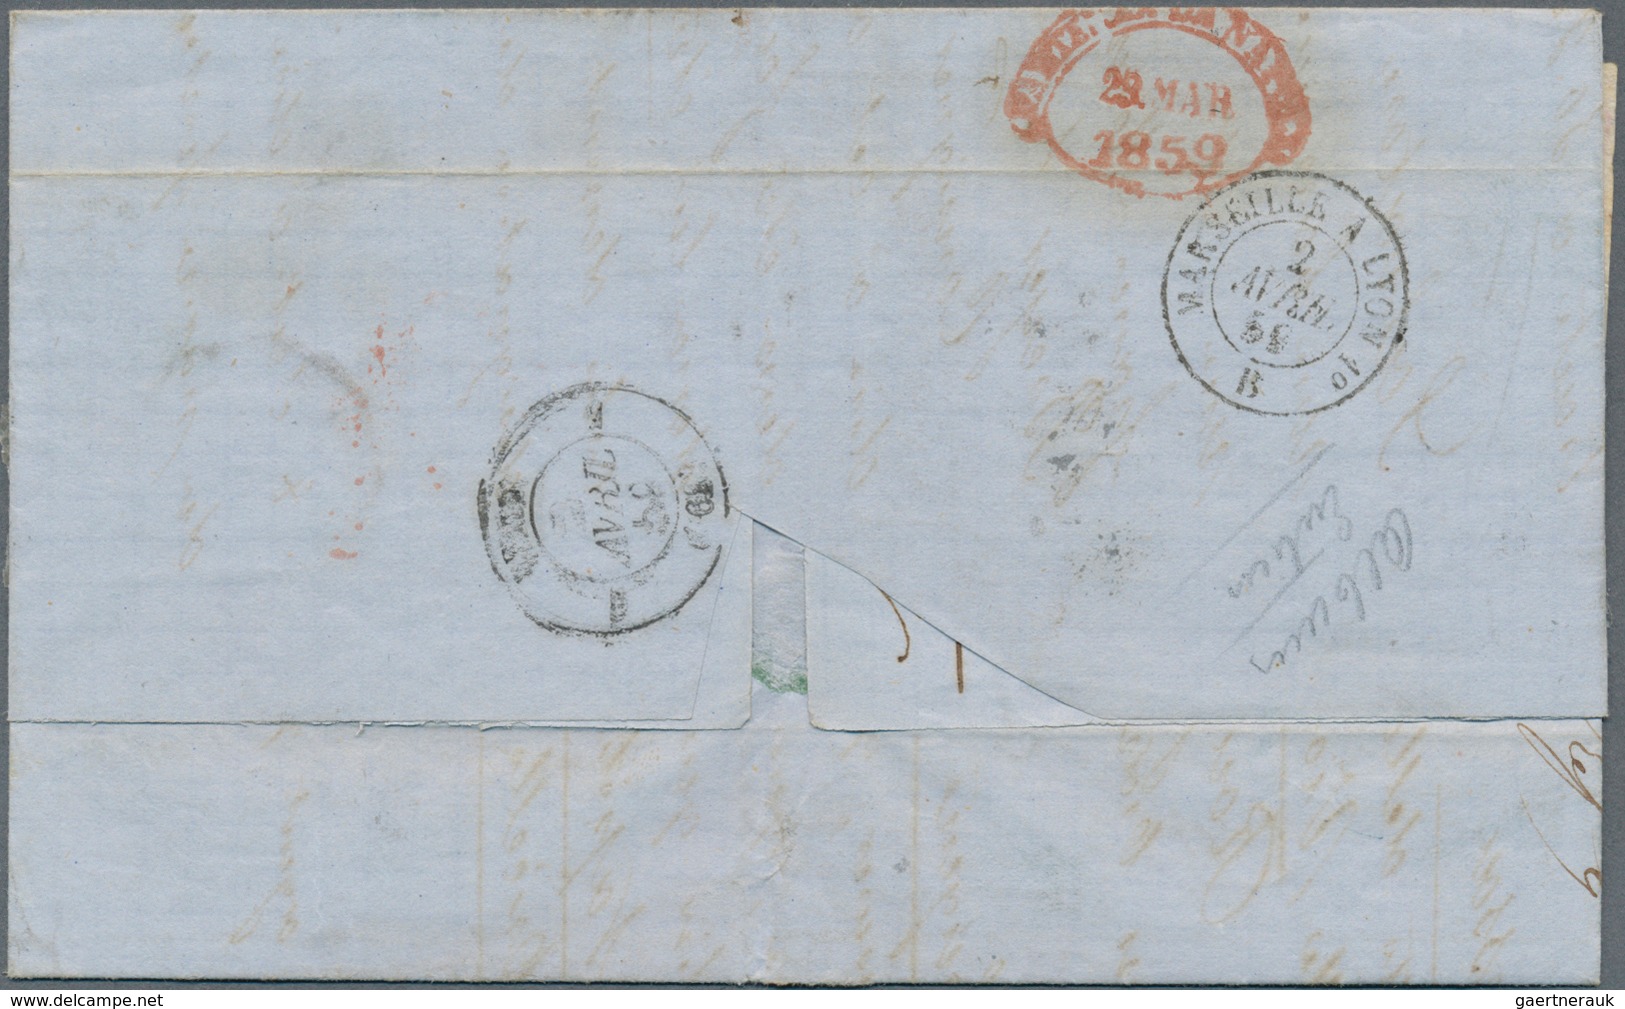 00748 Italien - Altitalienische Staaten: Neapel: 1858: 20 Gr, 10 Gr And 5 Gr On "PD" Letter From NAPLES 29 - Napels